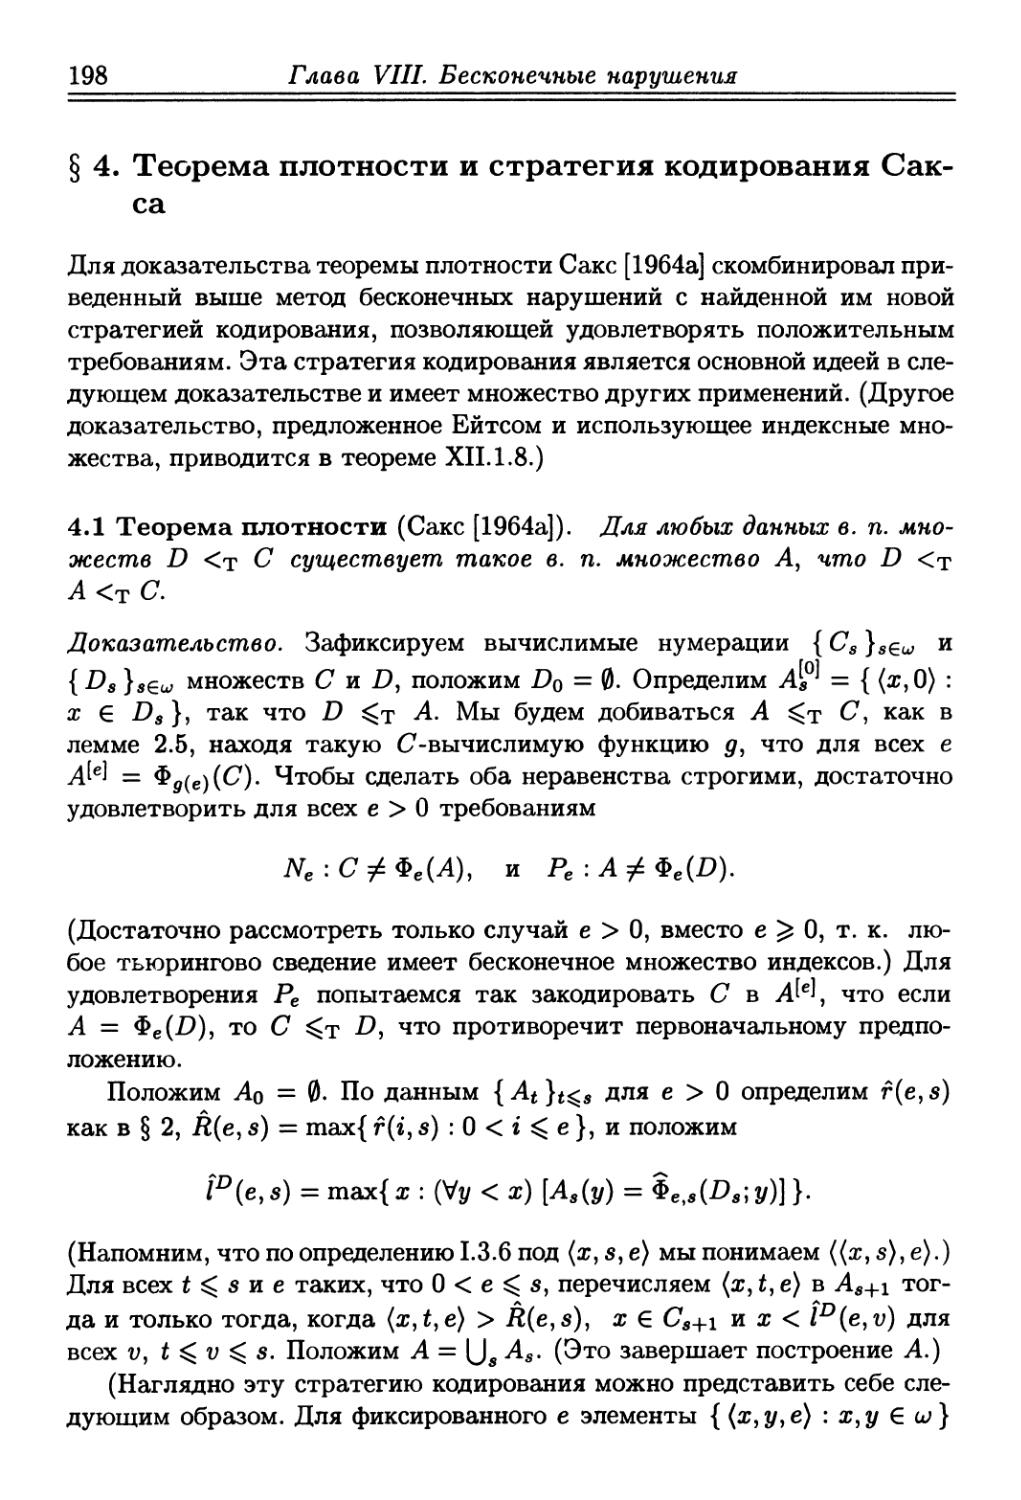 § 4. Теорема плотности и стратегия кодирования Сакса